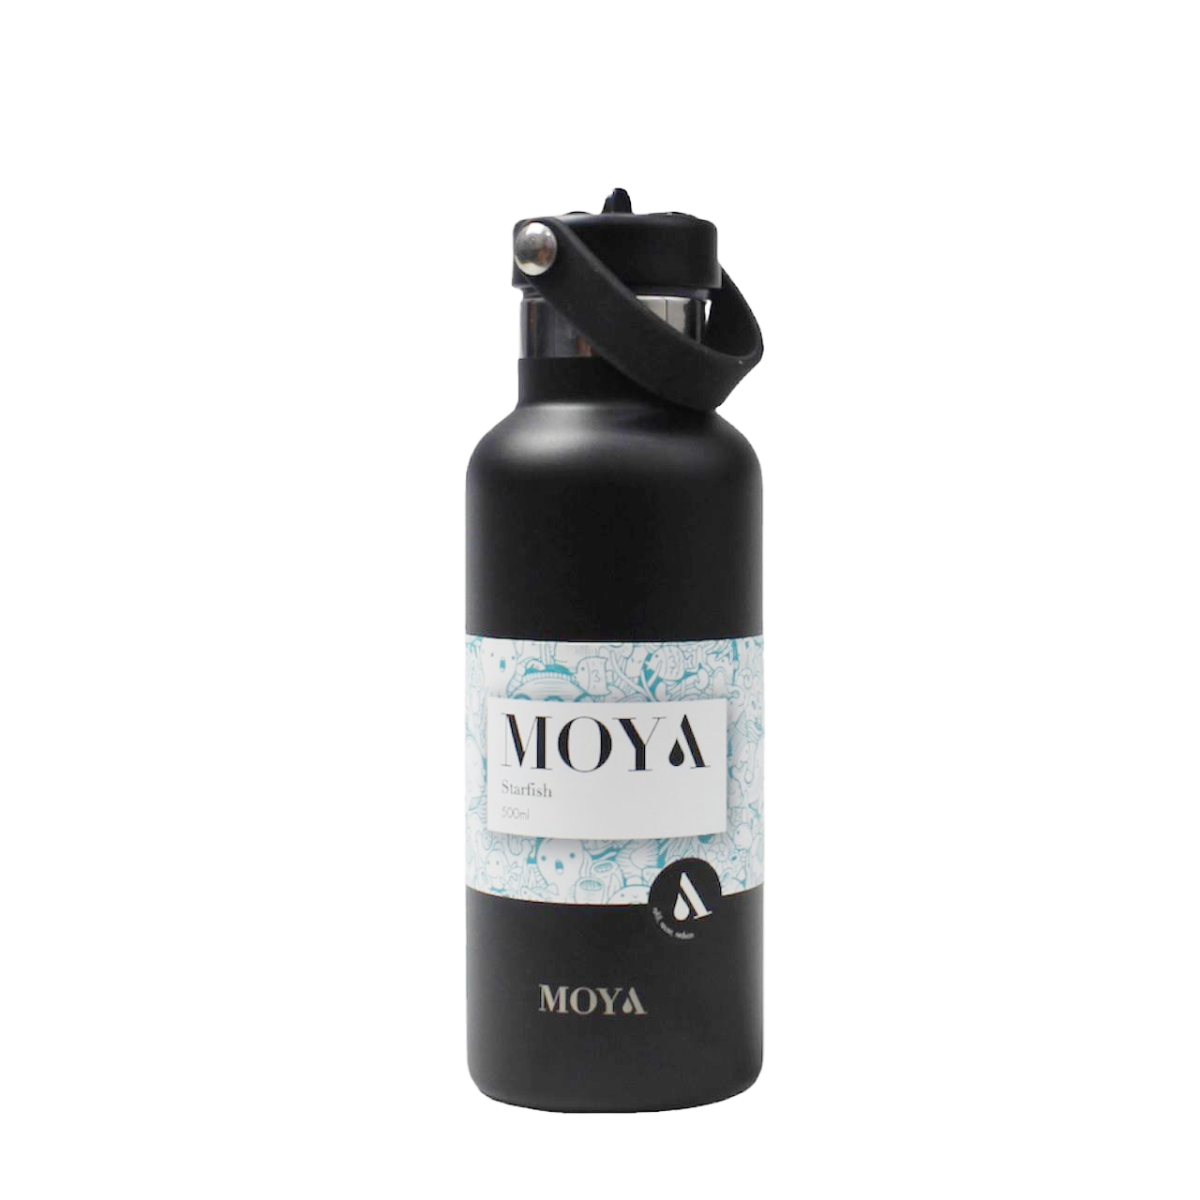 Moya "Starfish" 500ml Insulated Sustainable Water Bottle Black